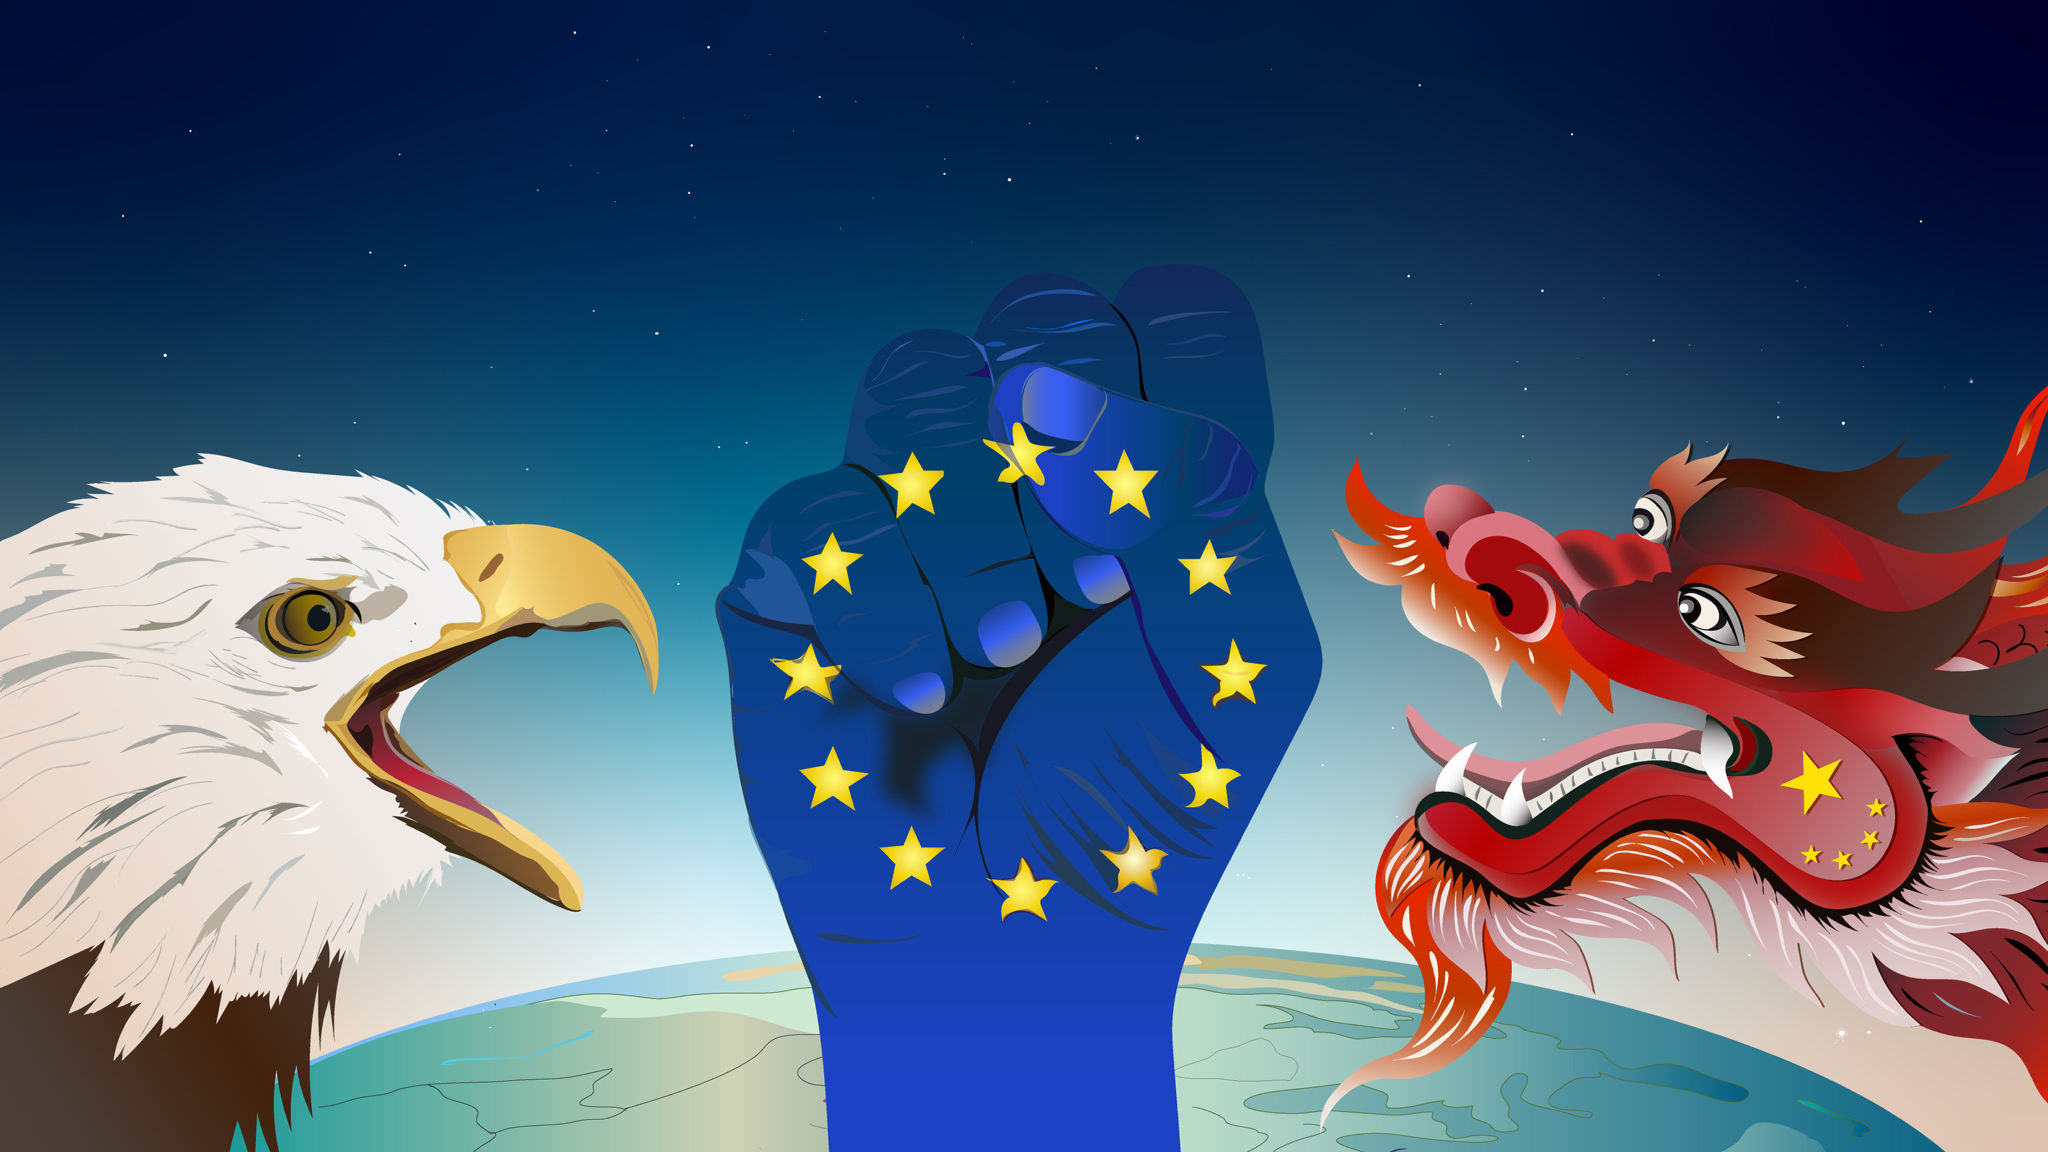 Illustratie EU maakt een vuist tegen Amerika en China